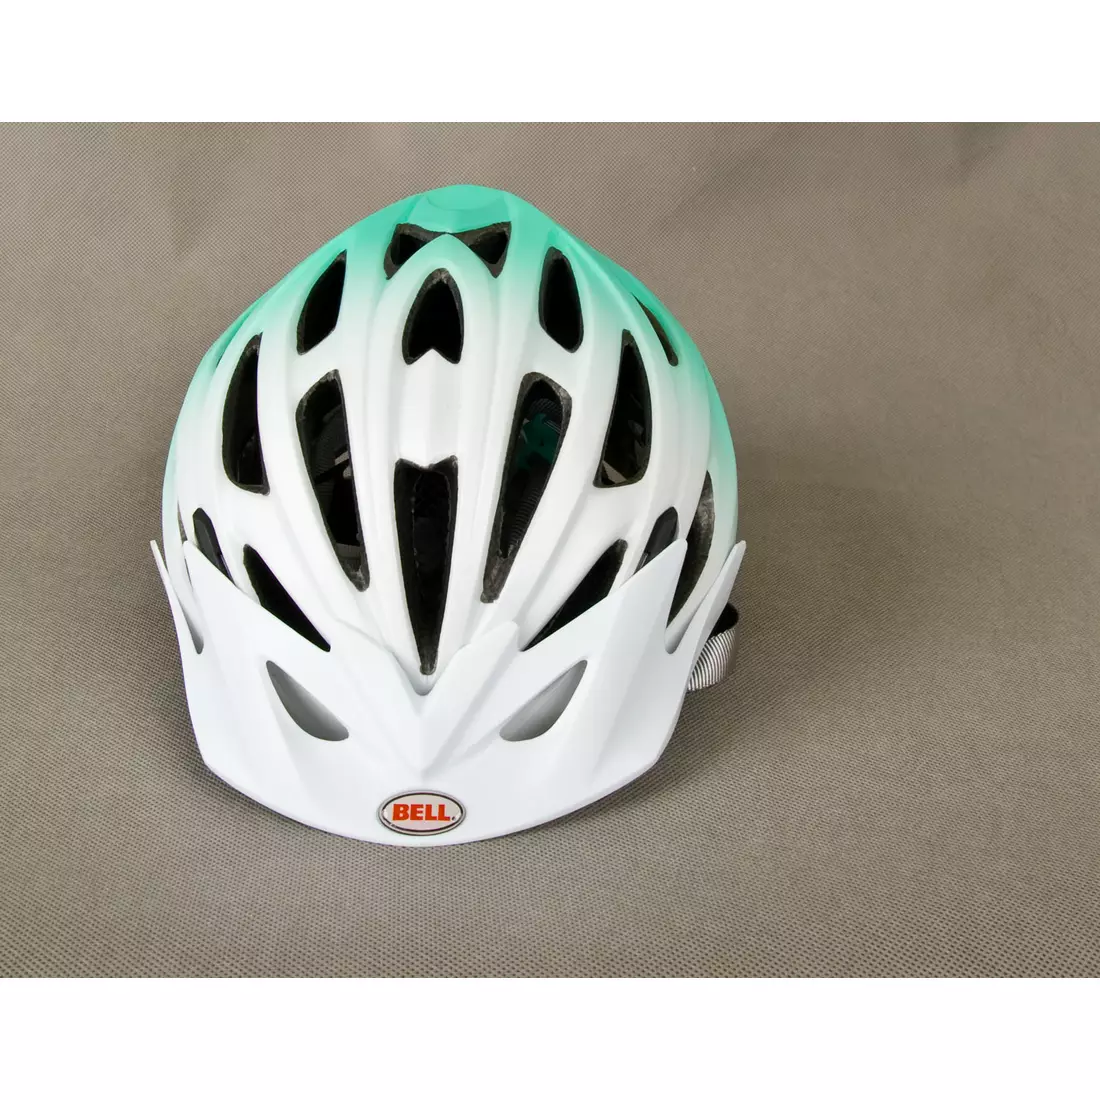 BELL SOLARA - dámská cyklistická přilba, bílá a zelená